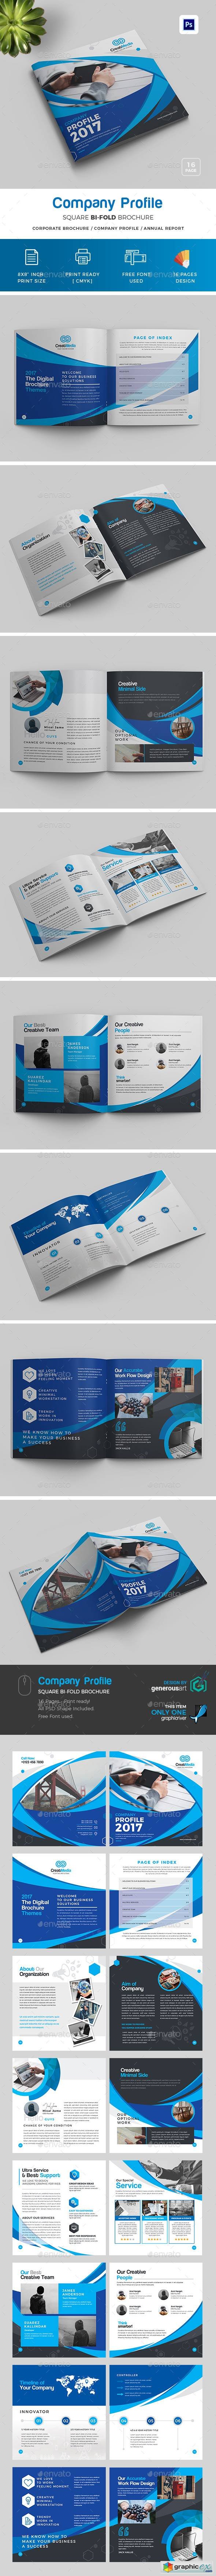 Square Bi-Fold Brochure